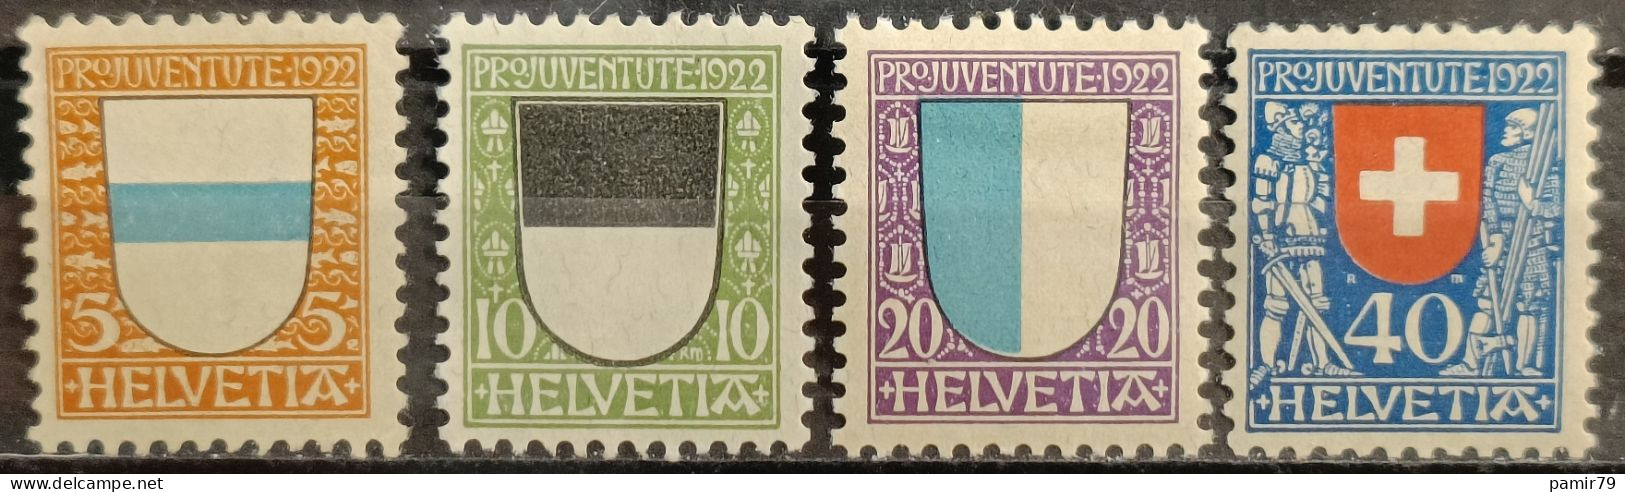 1922 PJ Kantonswappen Postfrisch** - Unused Stamps